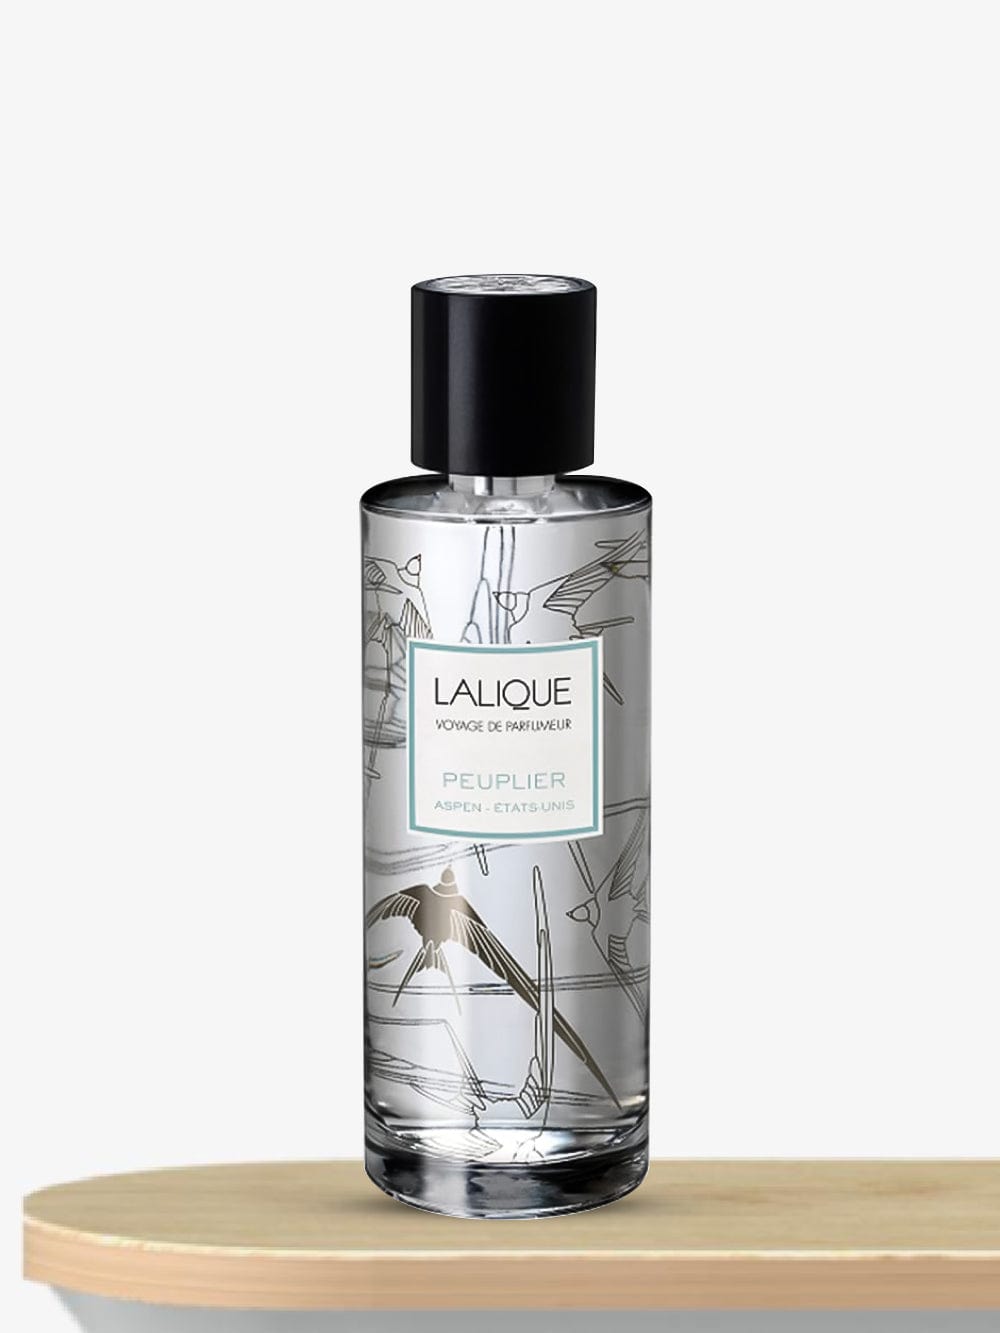 Lalique Peuplier Aspen Etats Unis Room Spray 100 mL